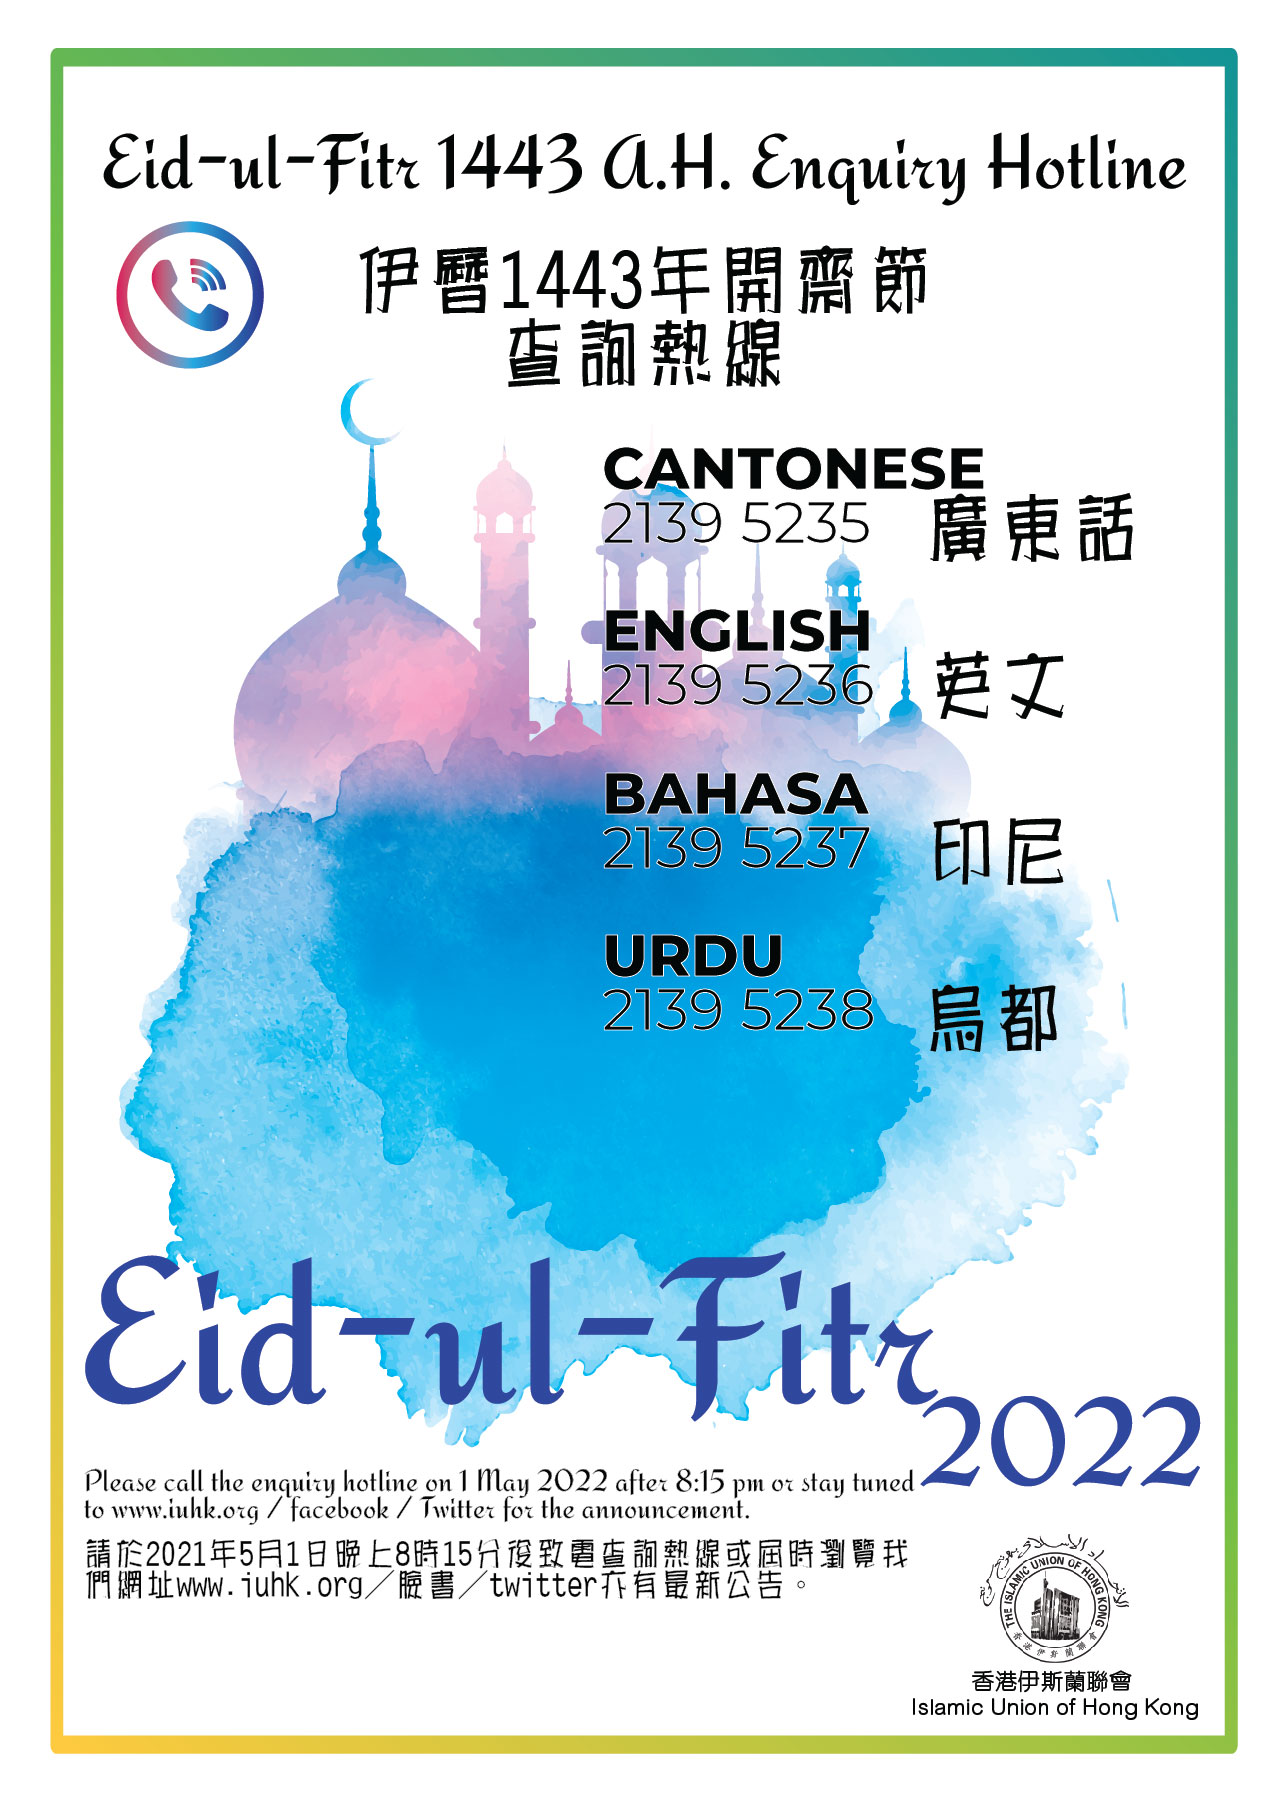 Eid ul Fitr hotline 2022